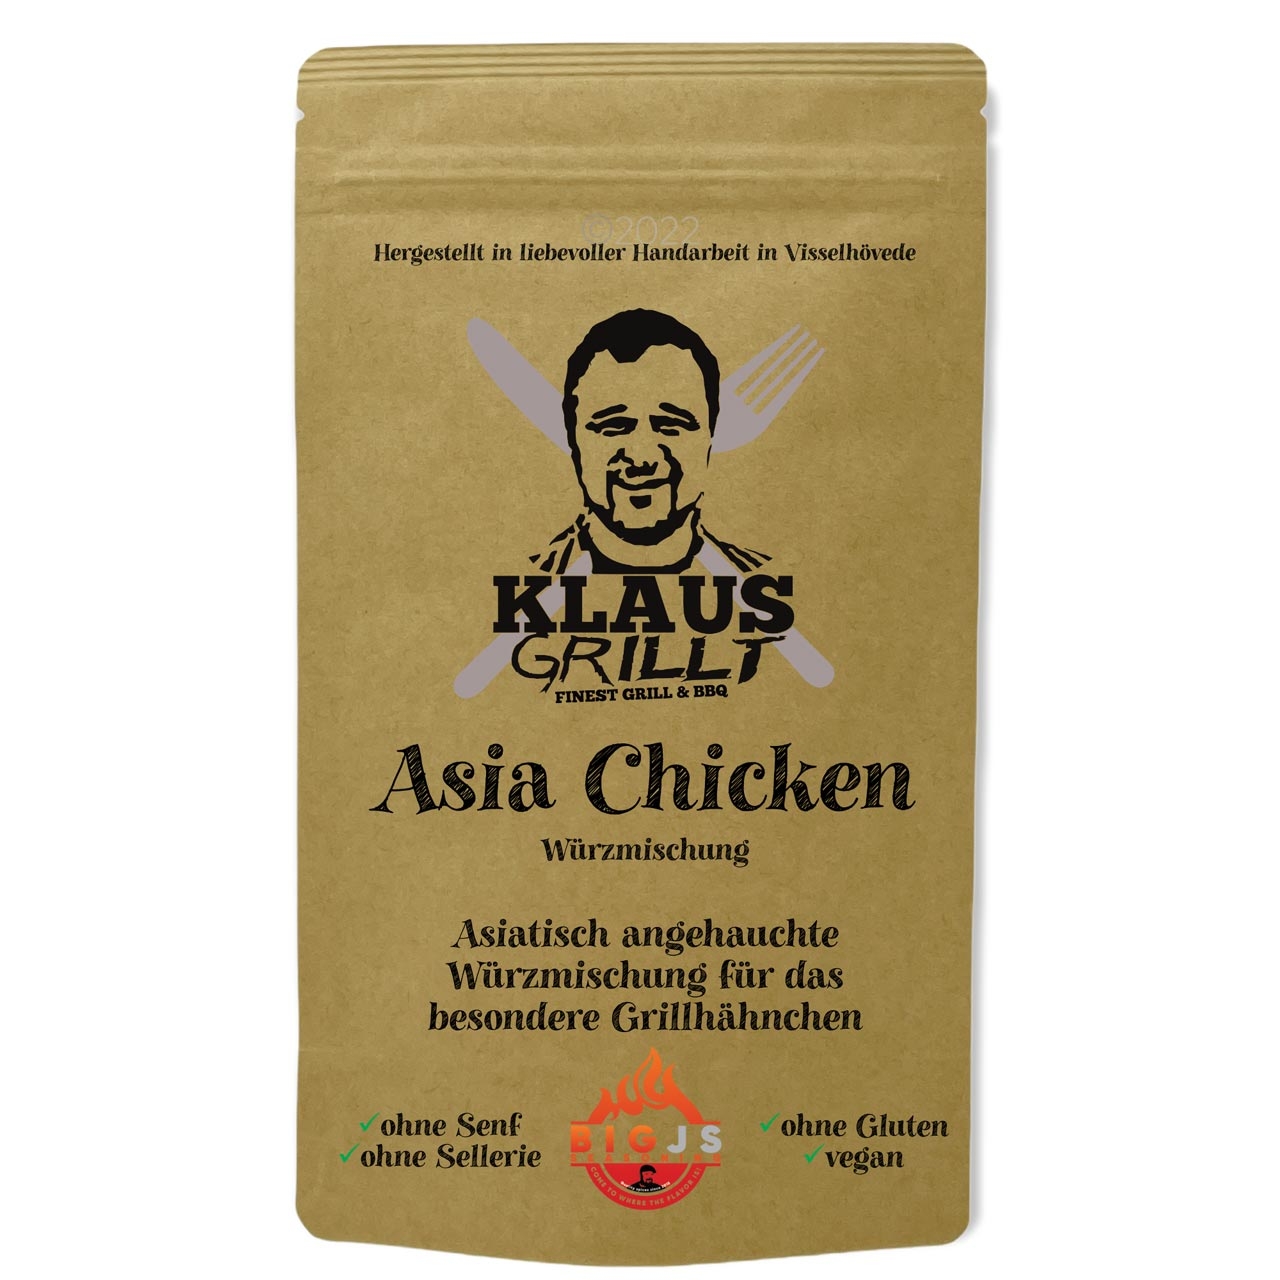 Klaus Grillt - Asia Chicken 250g Beutel